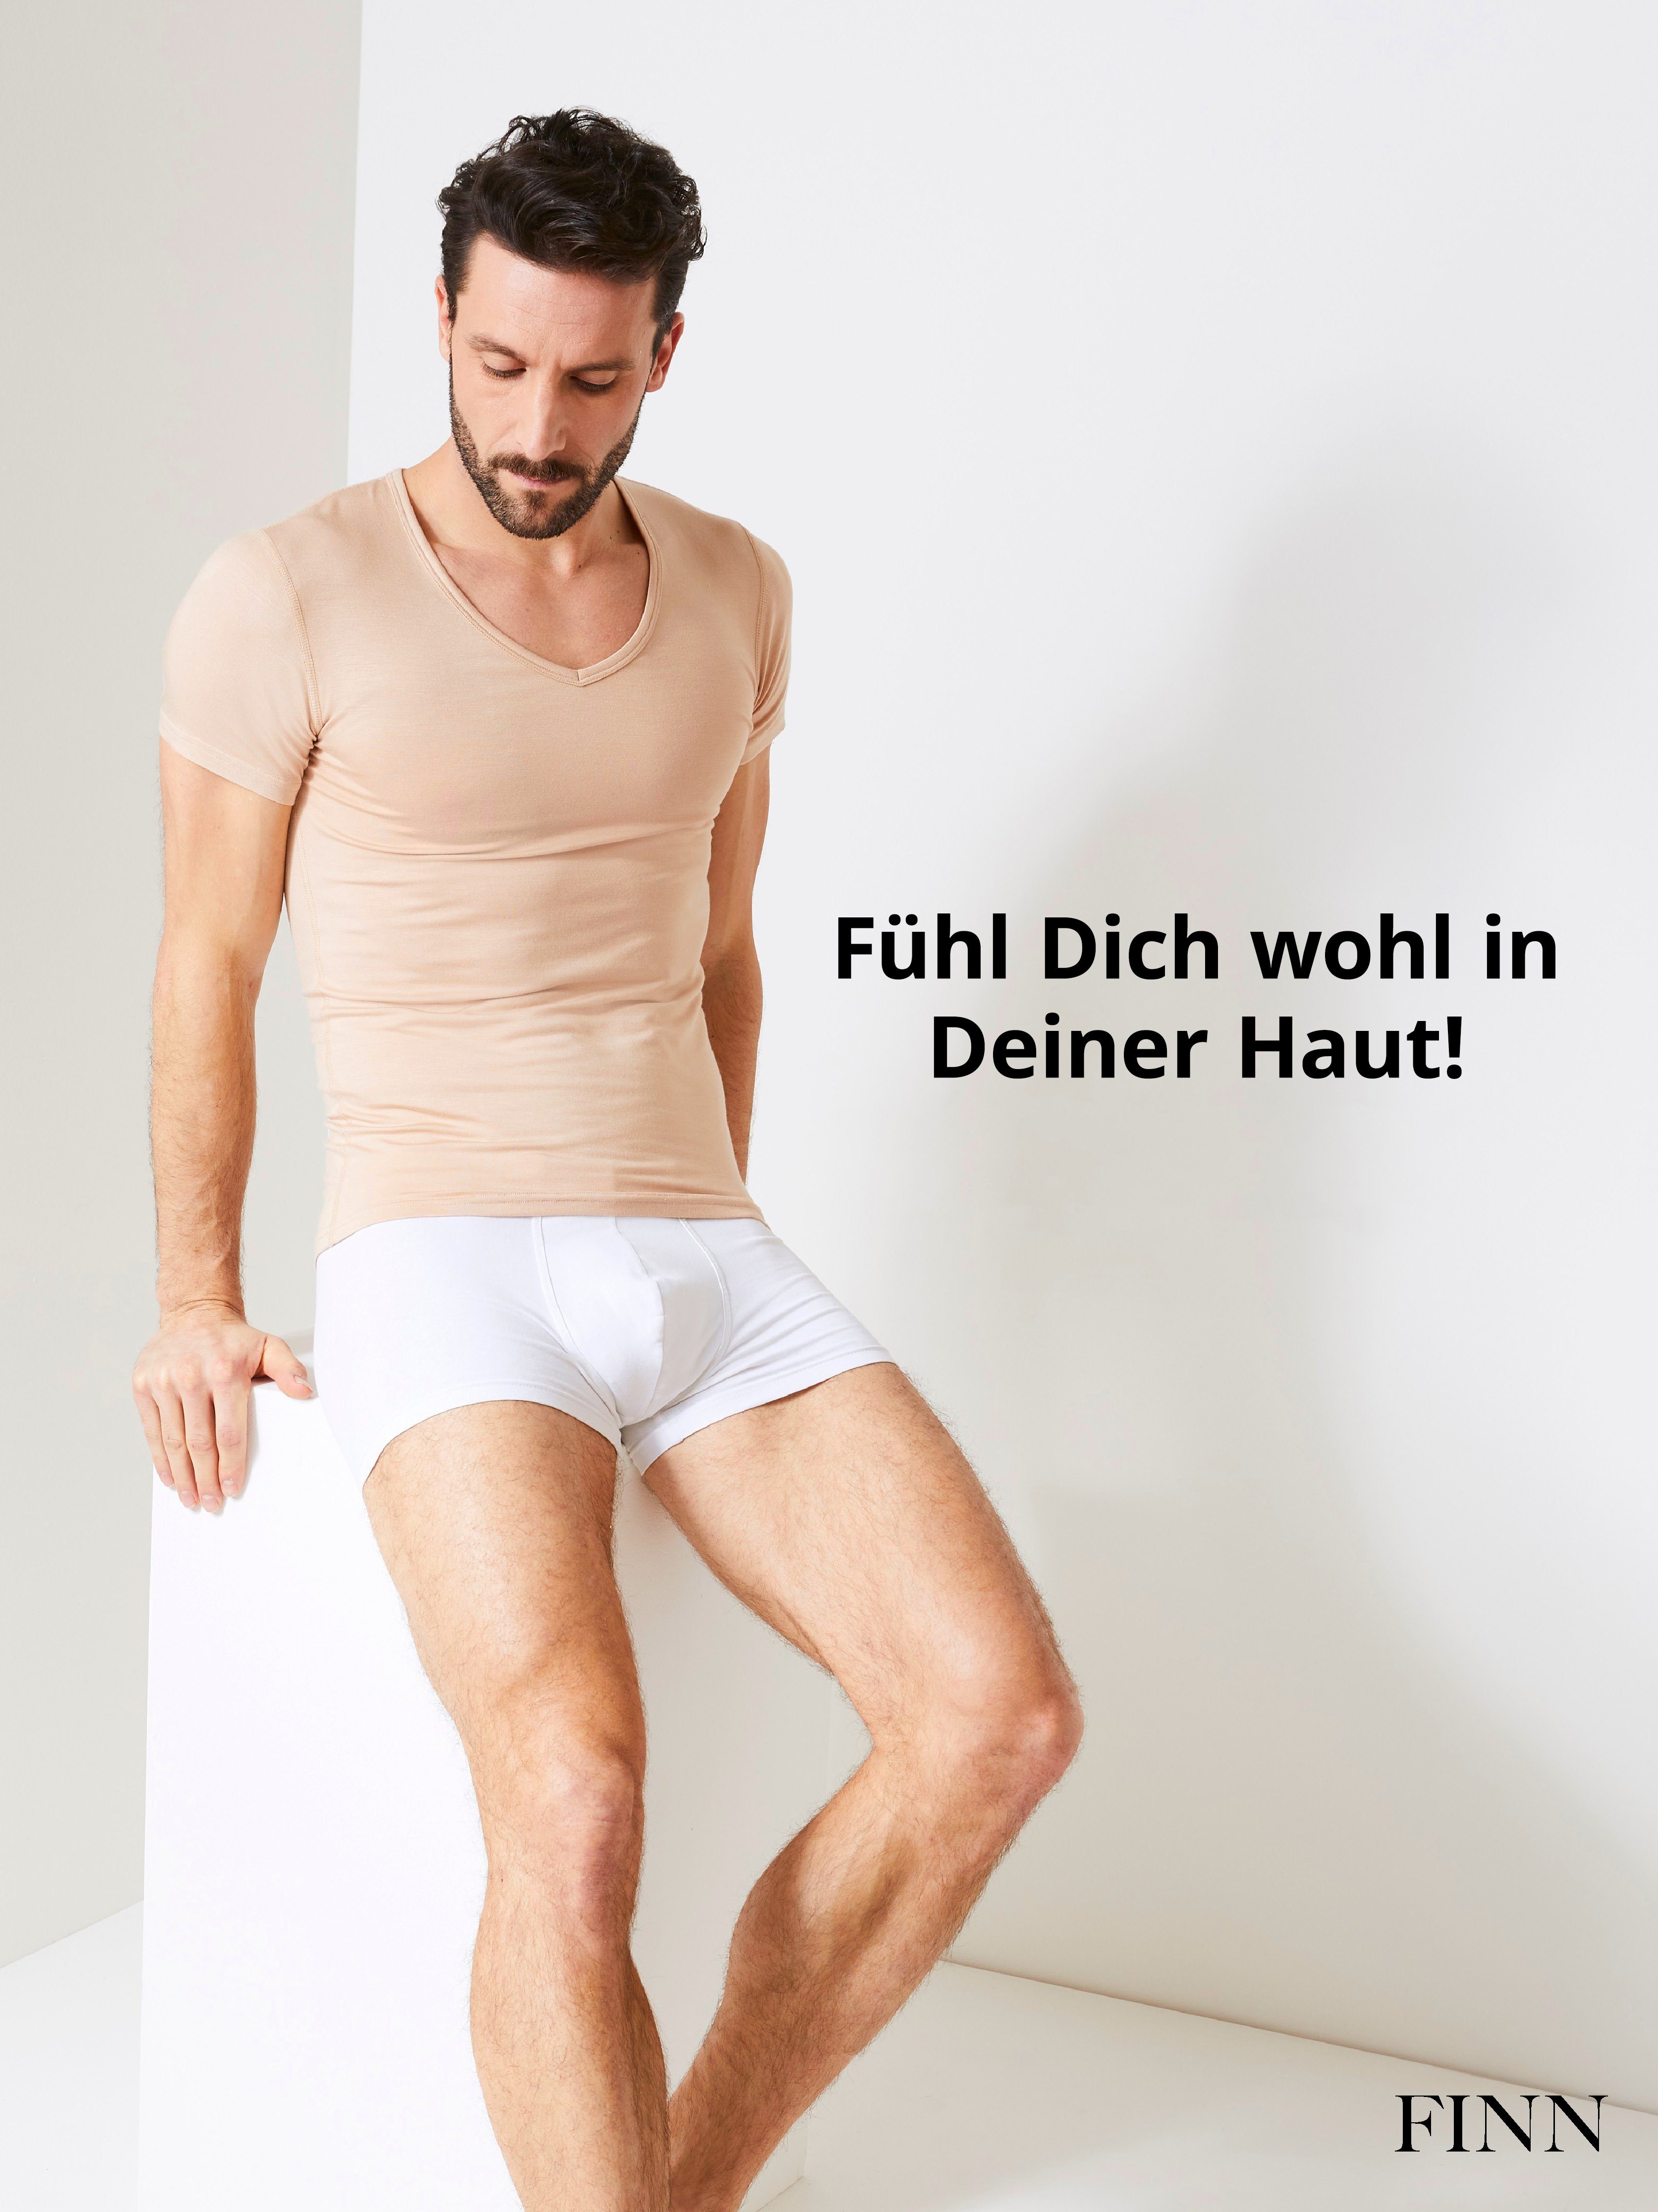 garantierte Herren Light-Beige Schweißflecken, FINN 100% Schutz Wirkung Unterhemd Unterhemd vor Design Anti-Schweiß